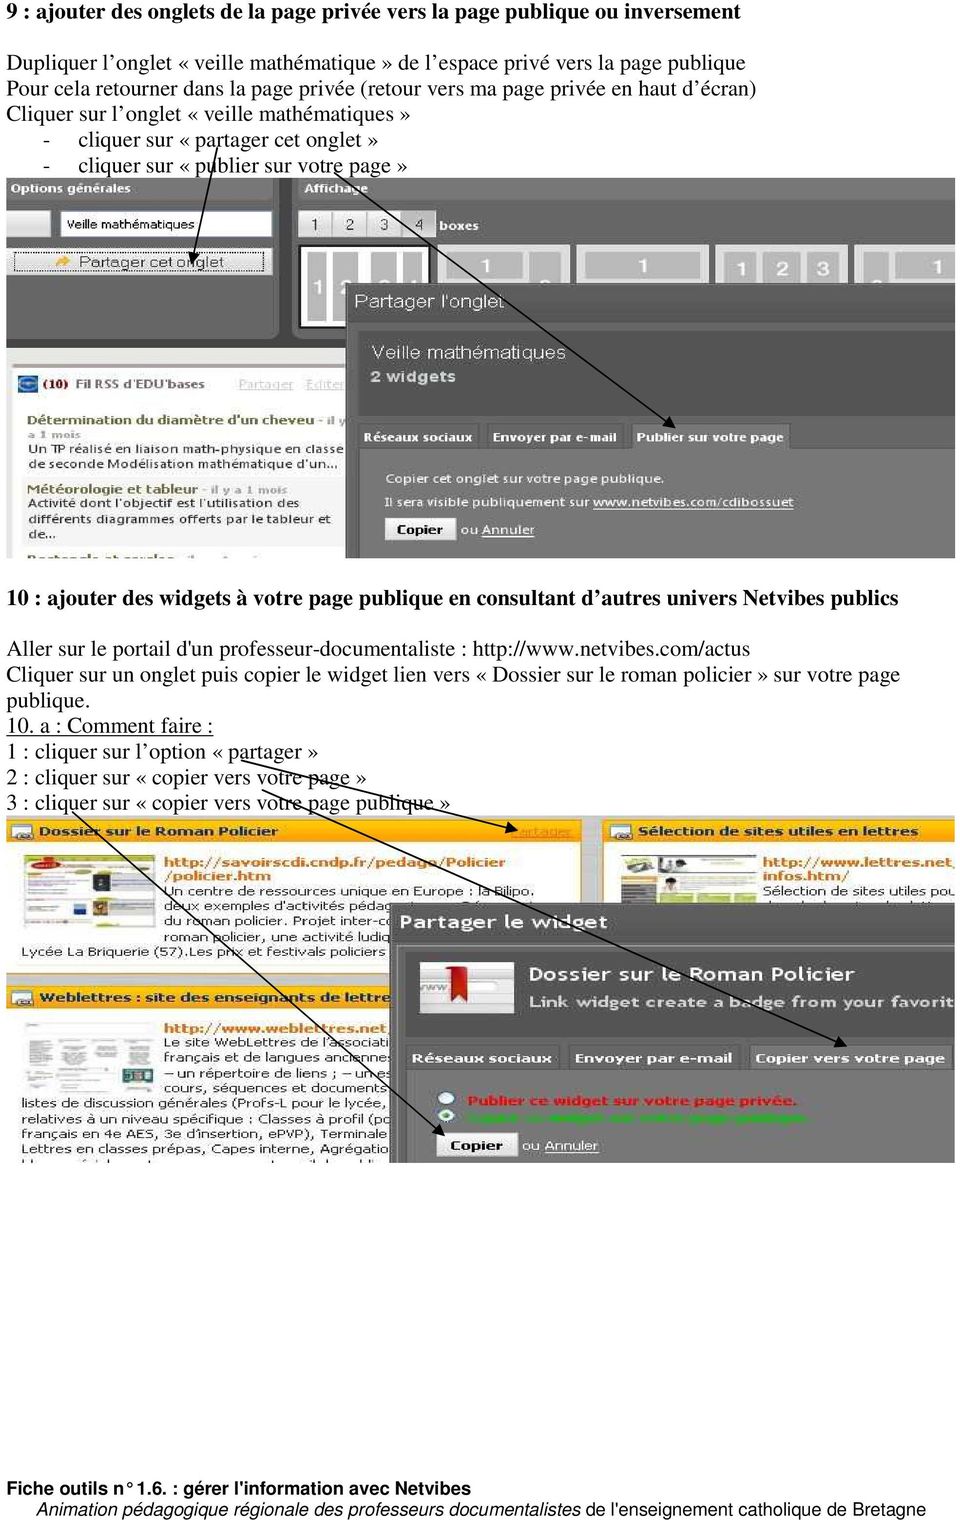 page publique en consultant d autres univers Netvibes publics Aller sur le portail d'un professeur-documentaliste : http://www.netvibes.